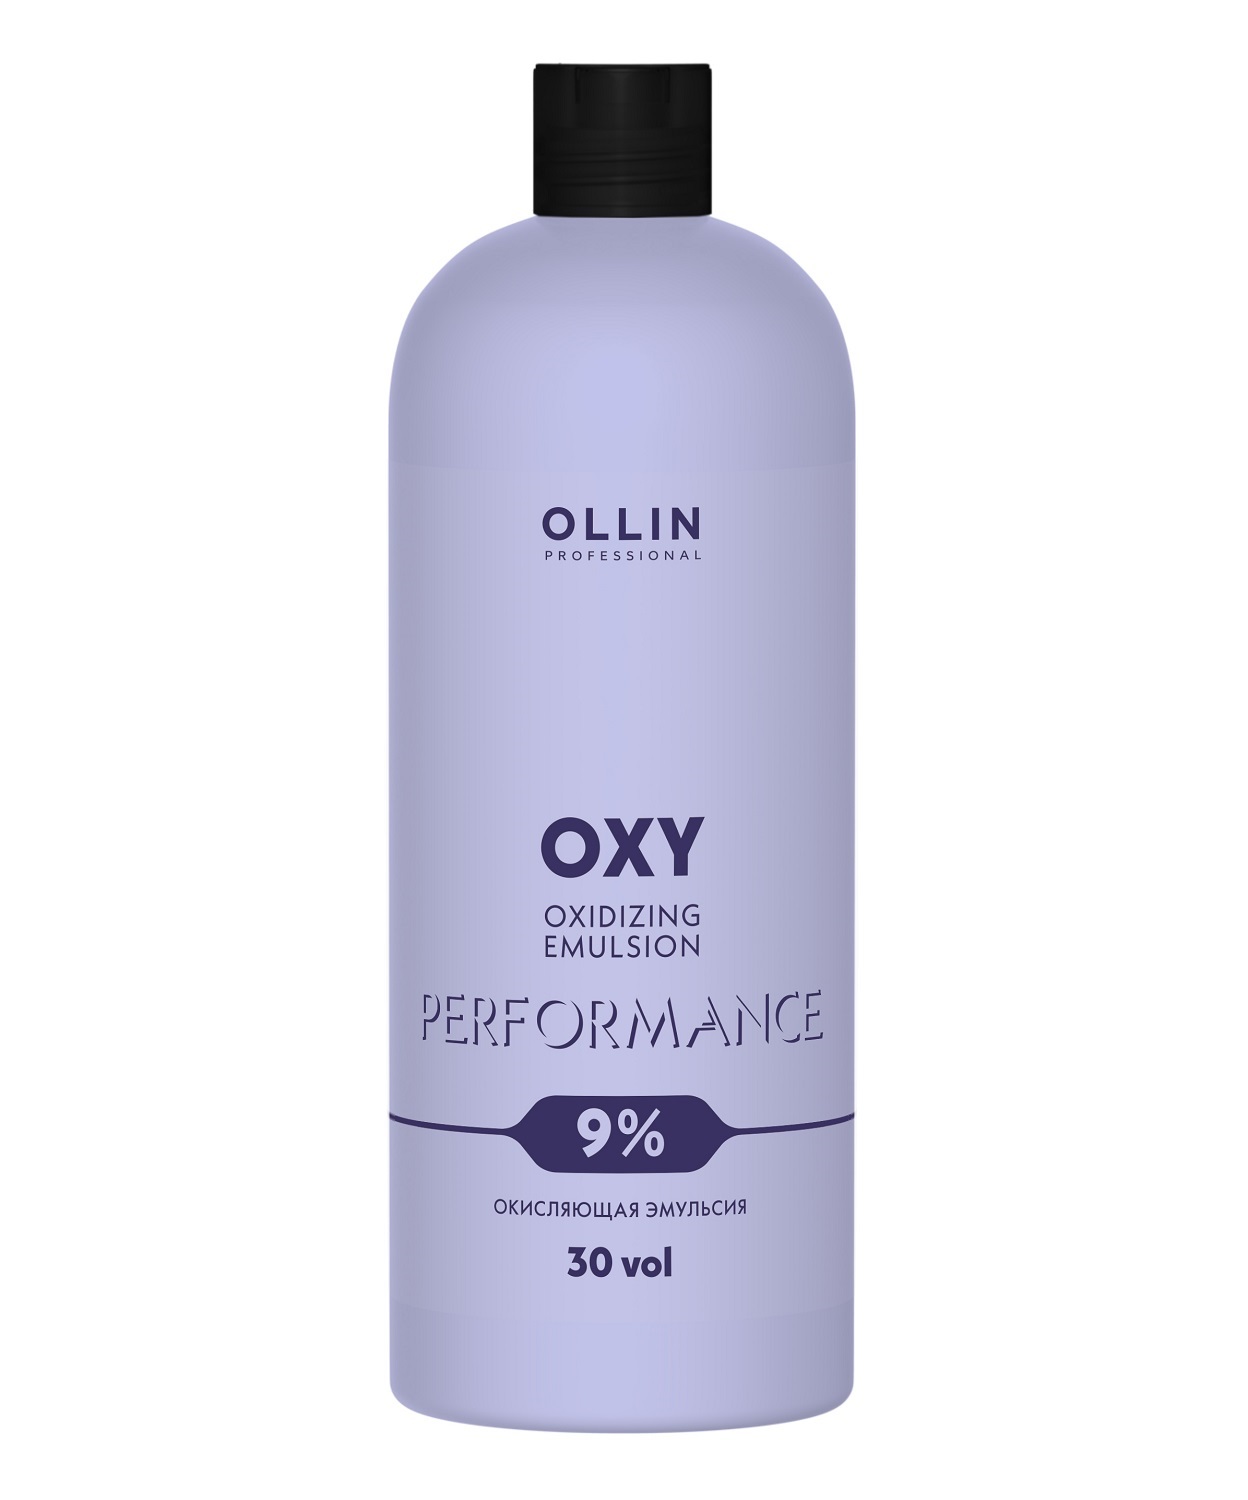 Ollin Professional Окисляющая эмульсия 9% 30 vol, 1000 мл (O